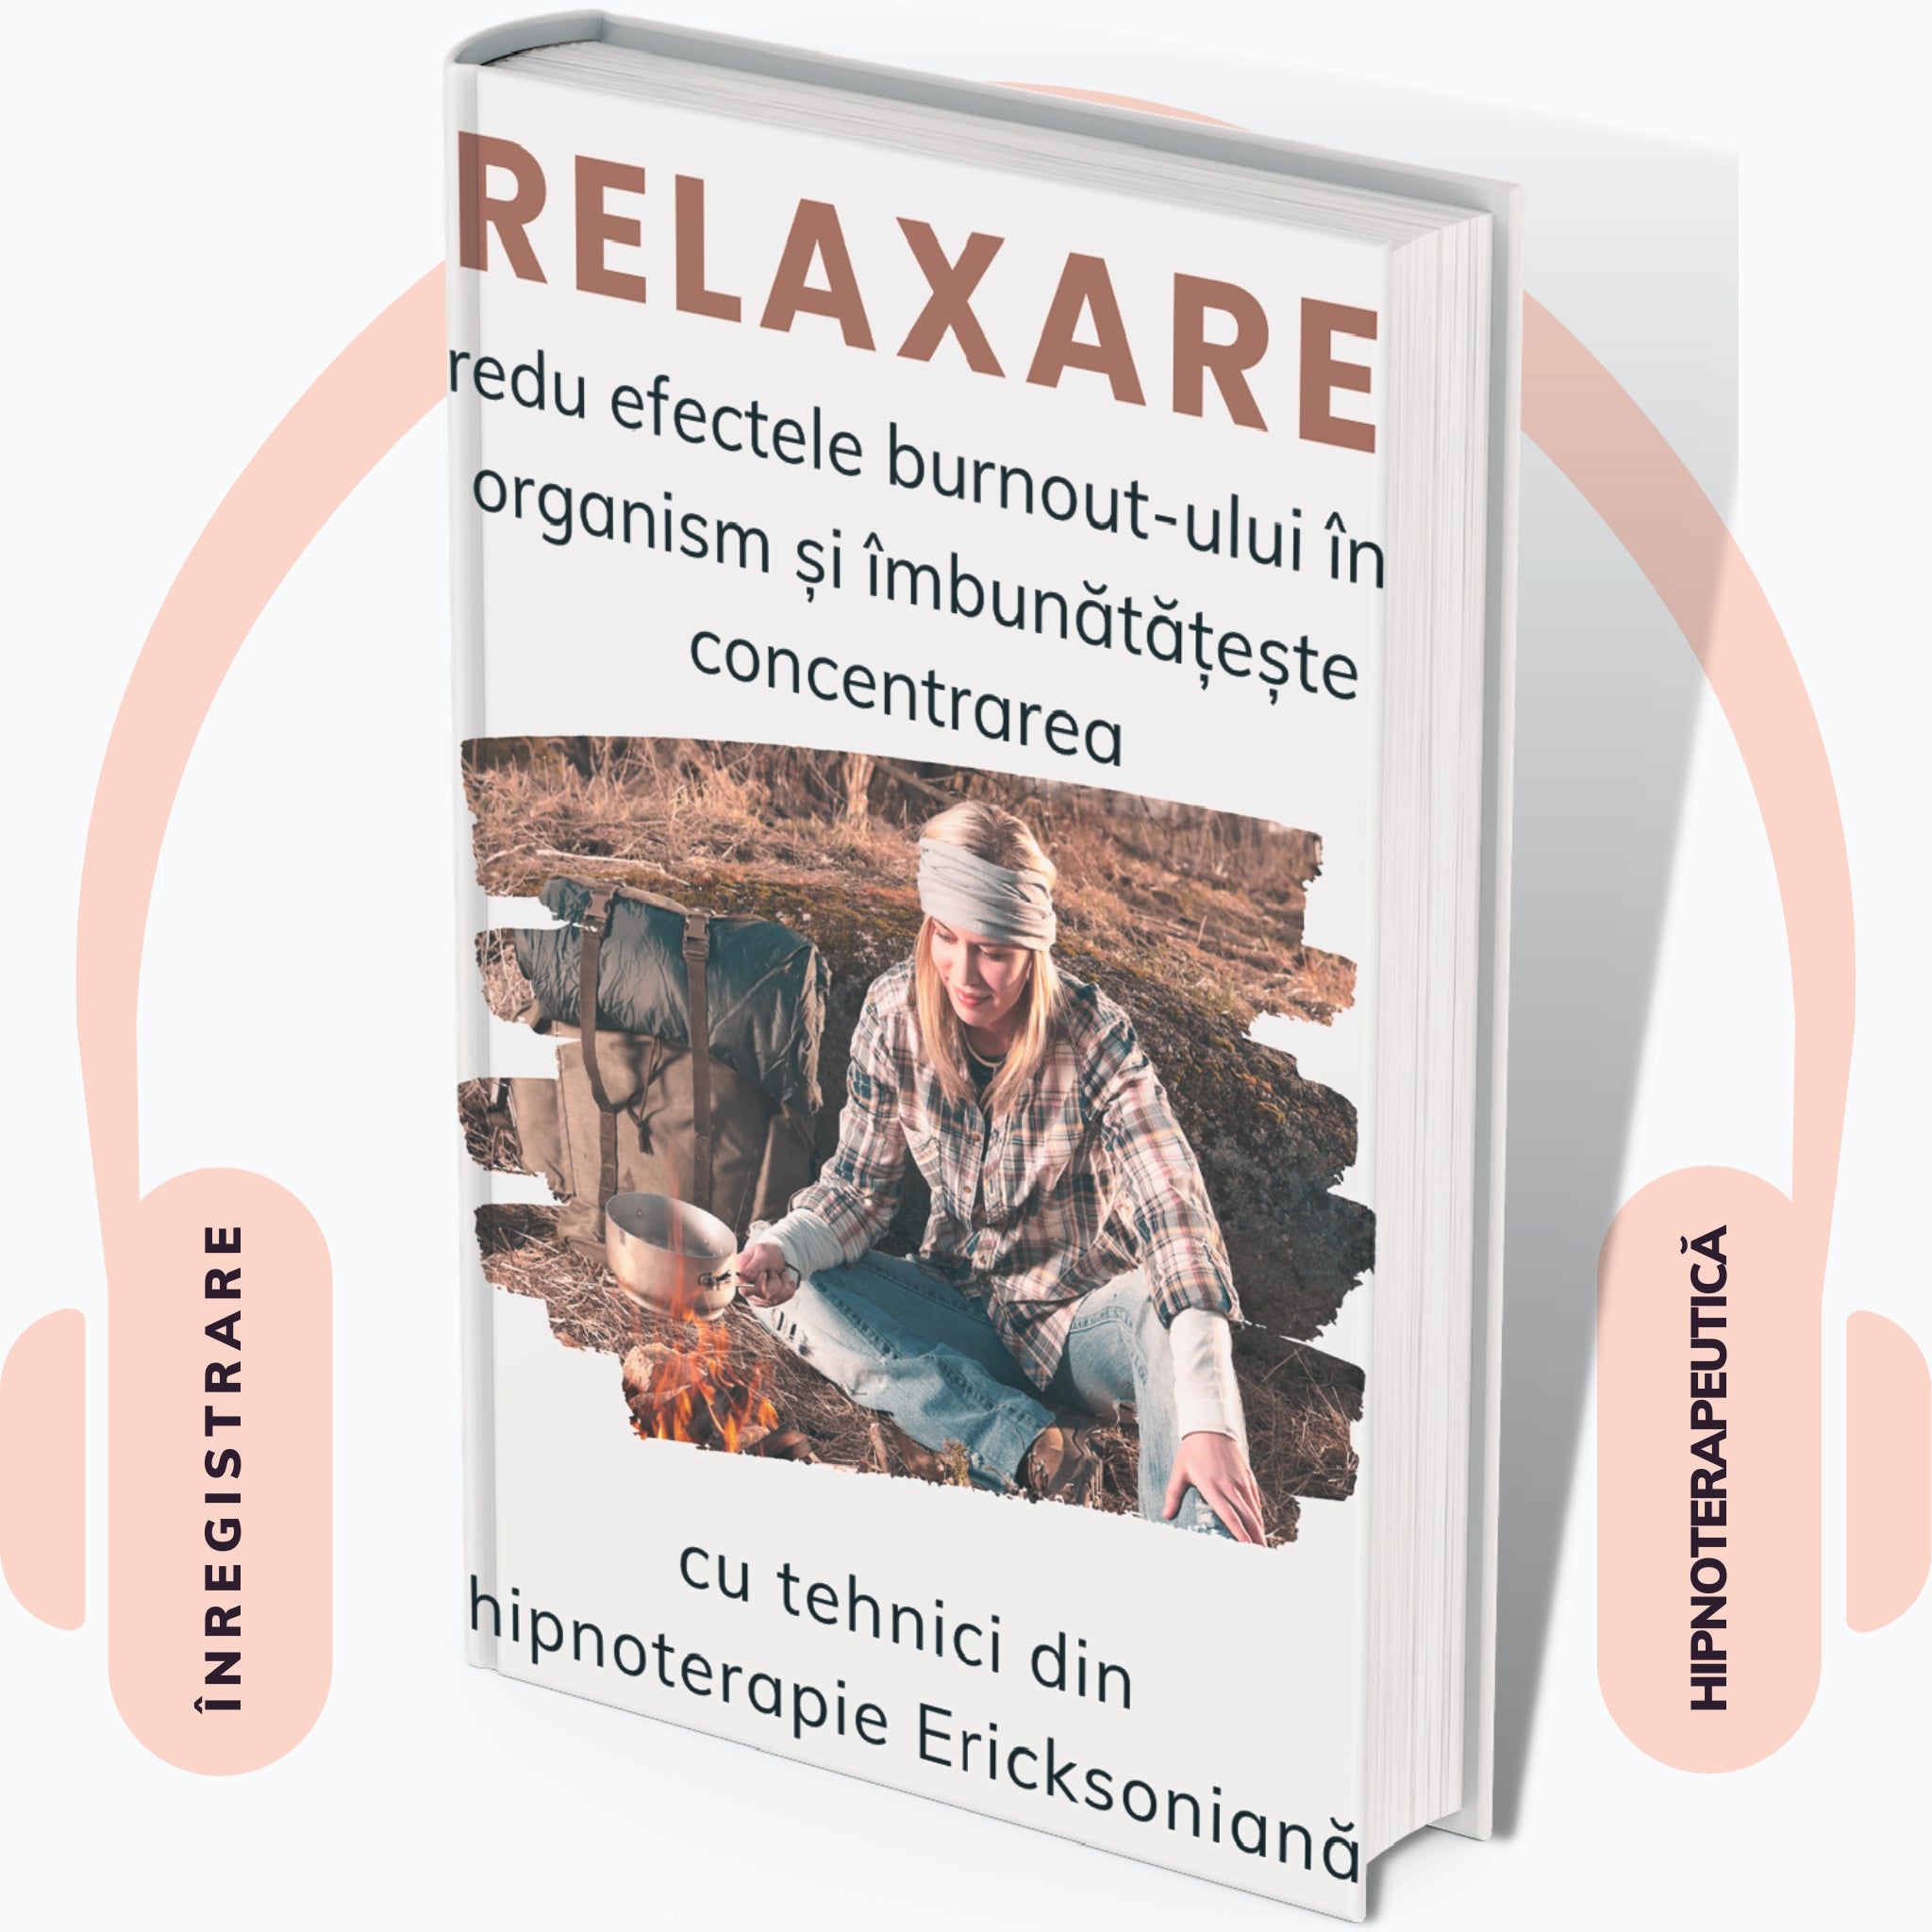 Coperta audiobook "Relaxare pentru reducerea burnout-ului in organizsm in imbunatatirea concentrarii"